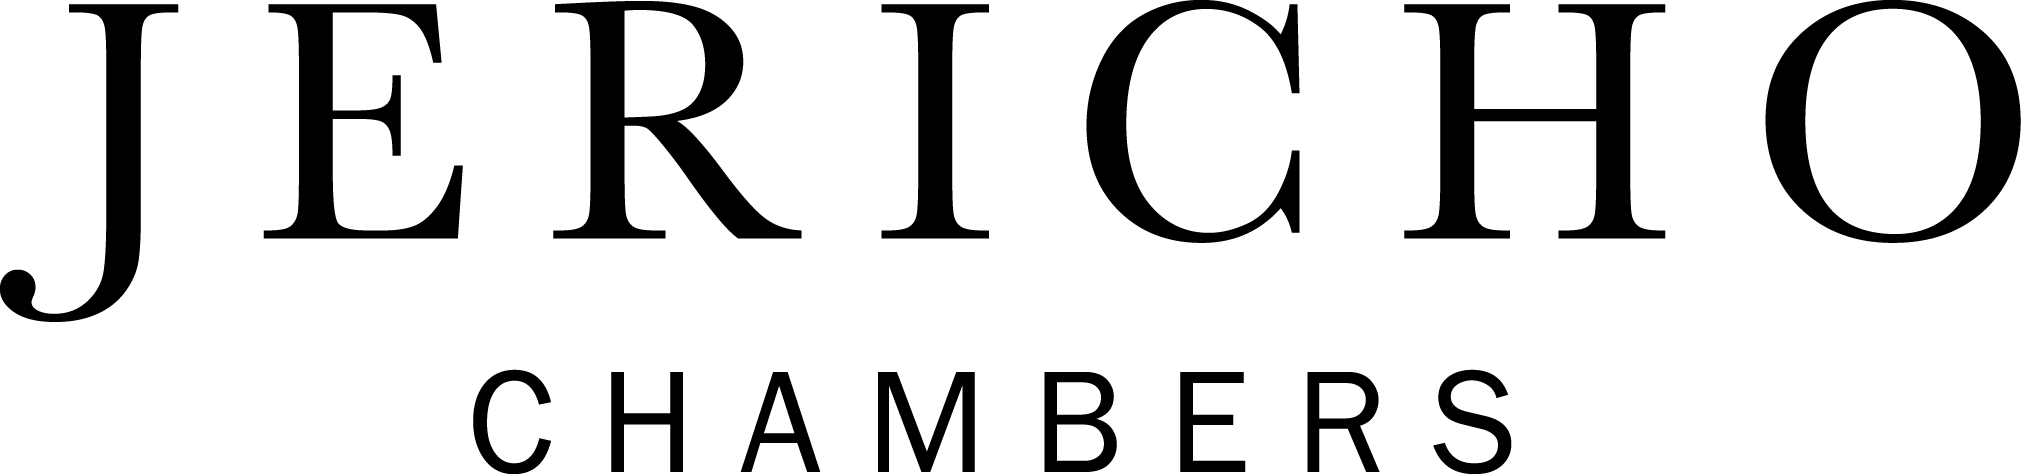 Jericho Logo - Jericho Chambers - Communications, Leadership & Trust